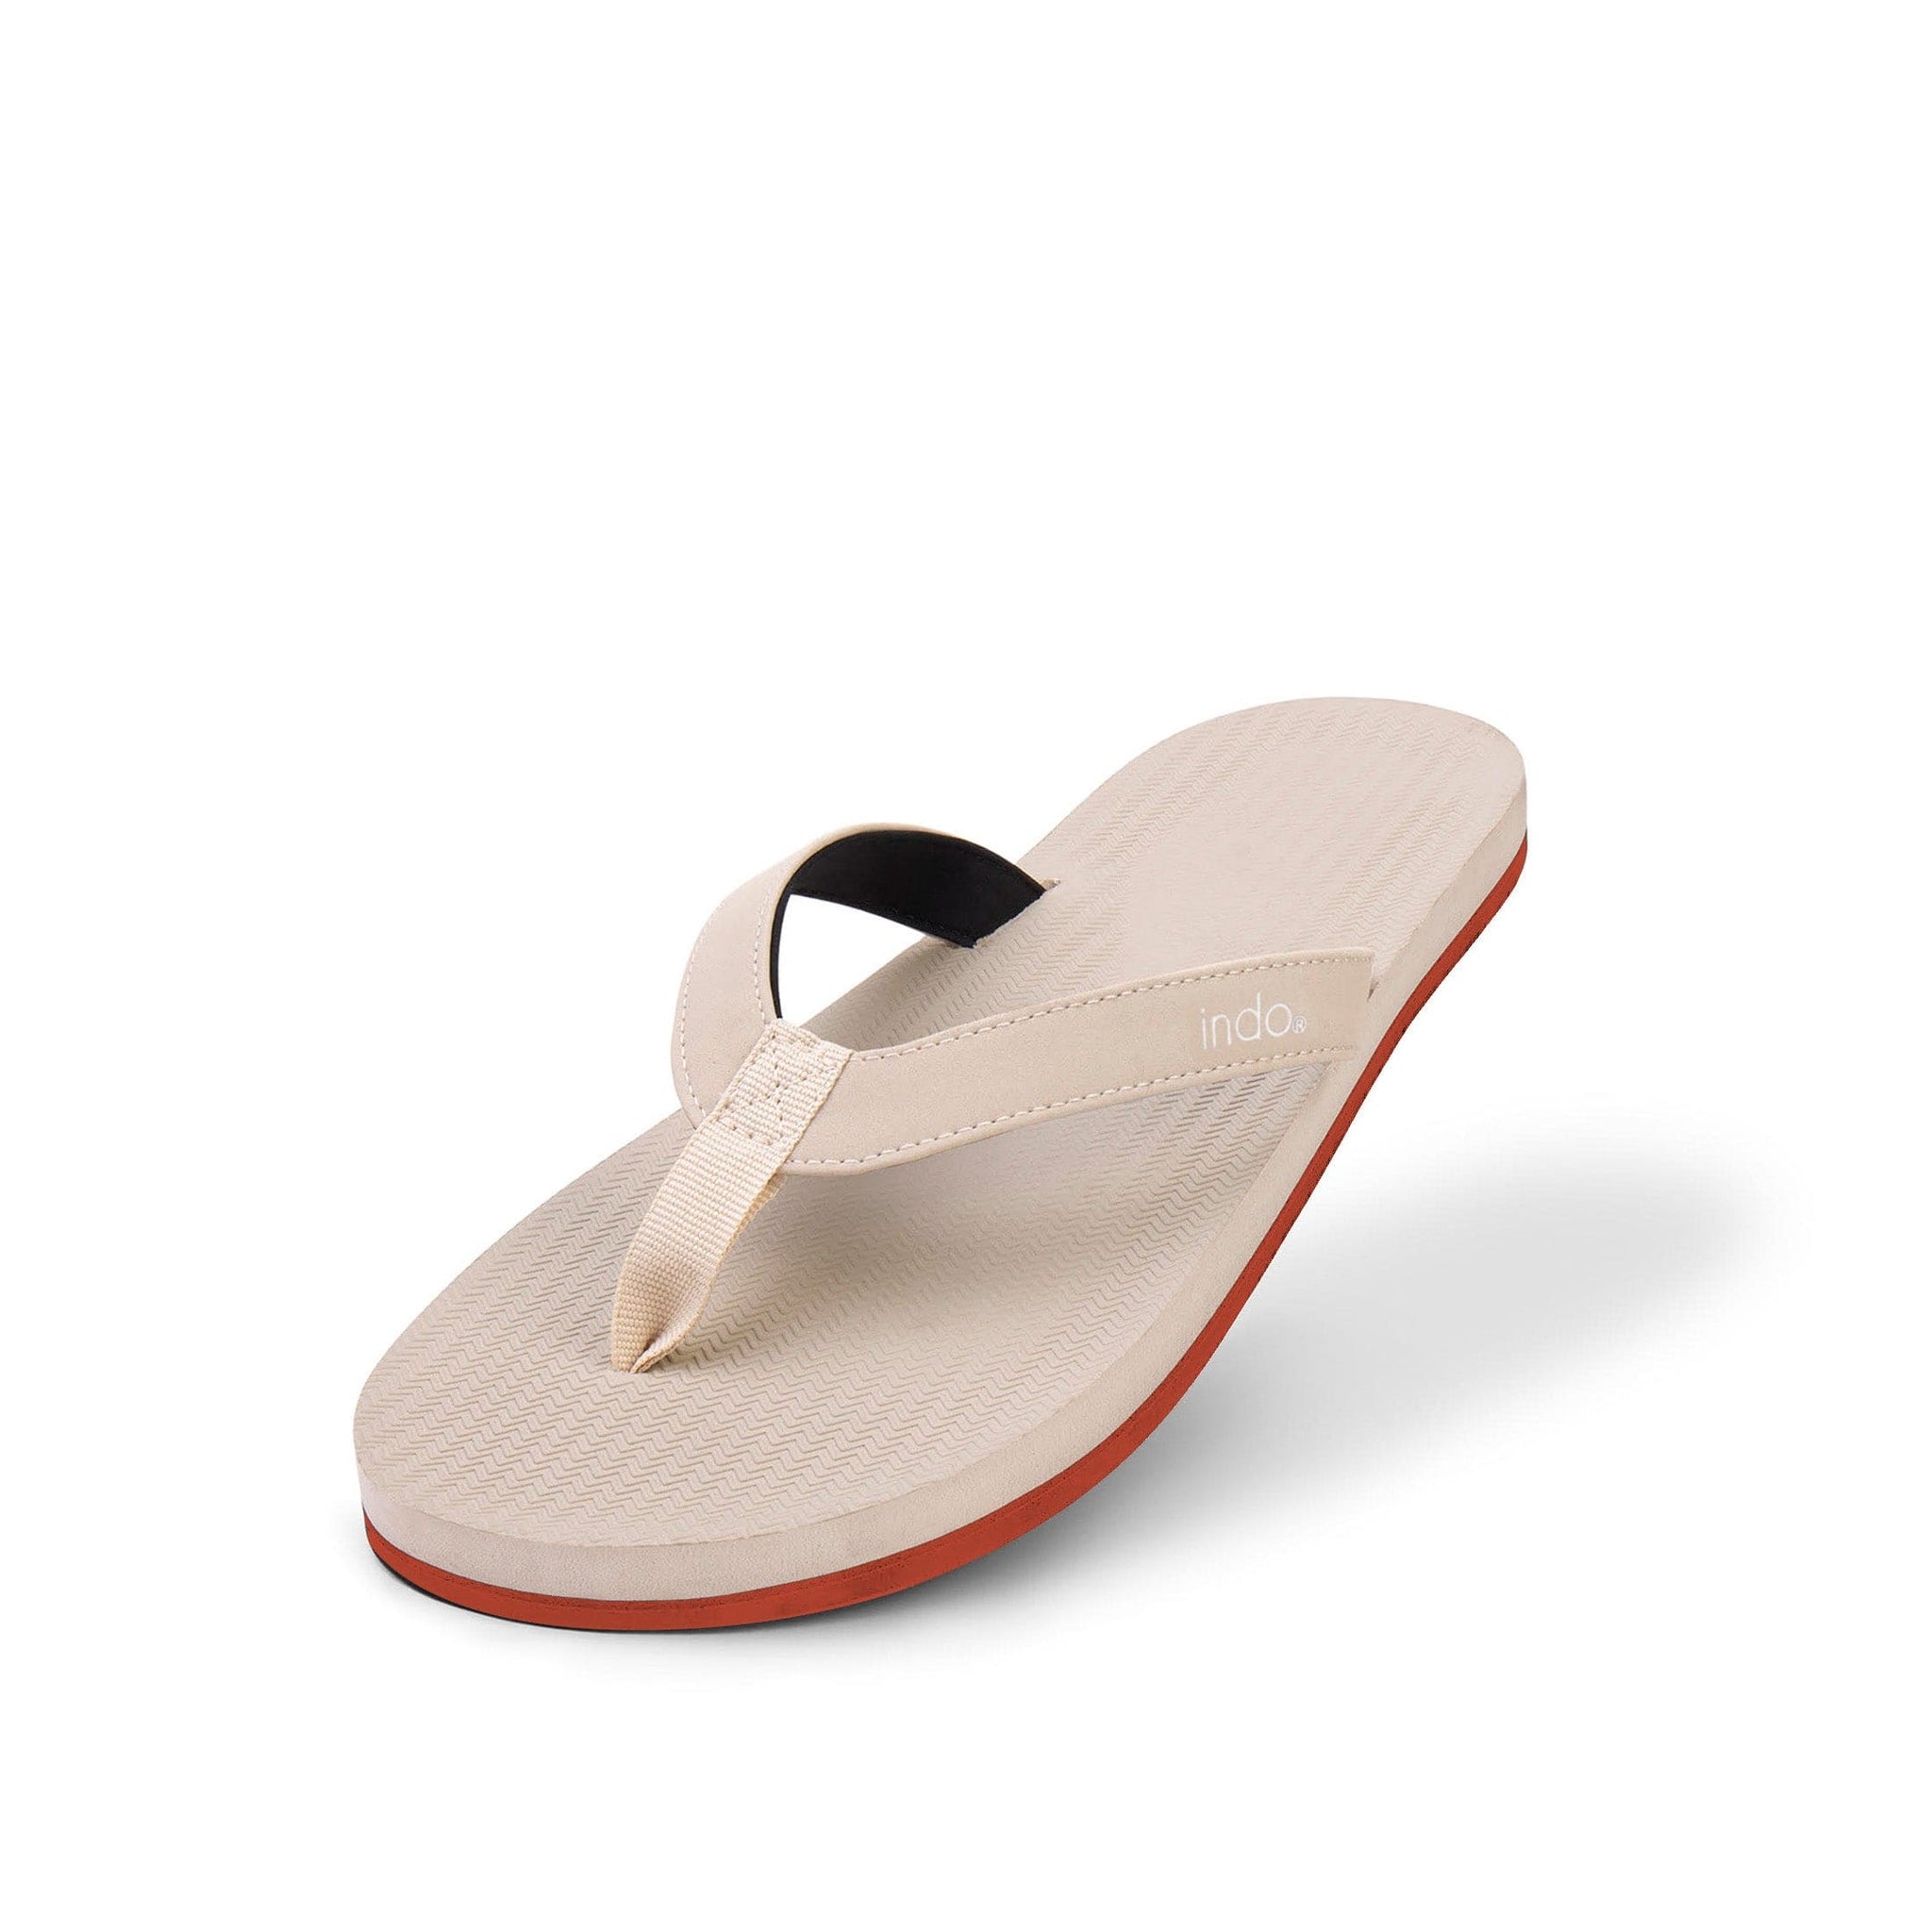 Women's Flip Flops Sneaker Sole - Sea Salt/Orange Sole